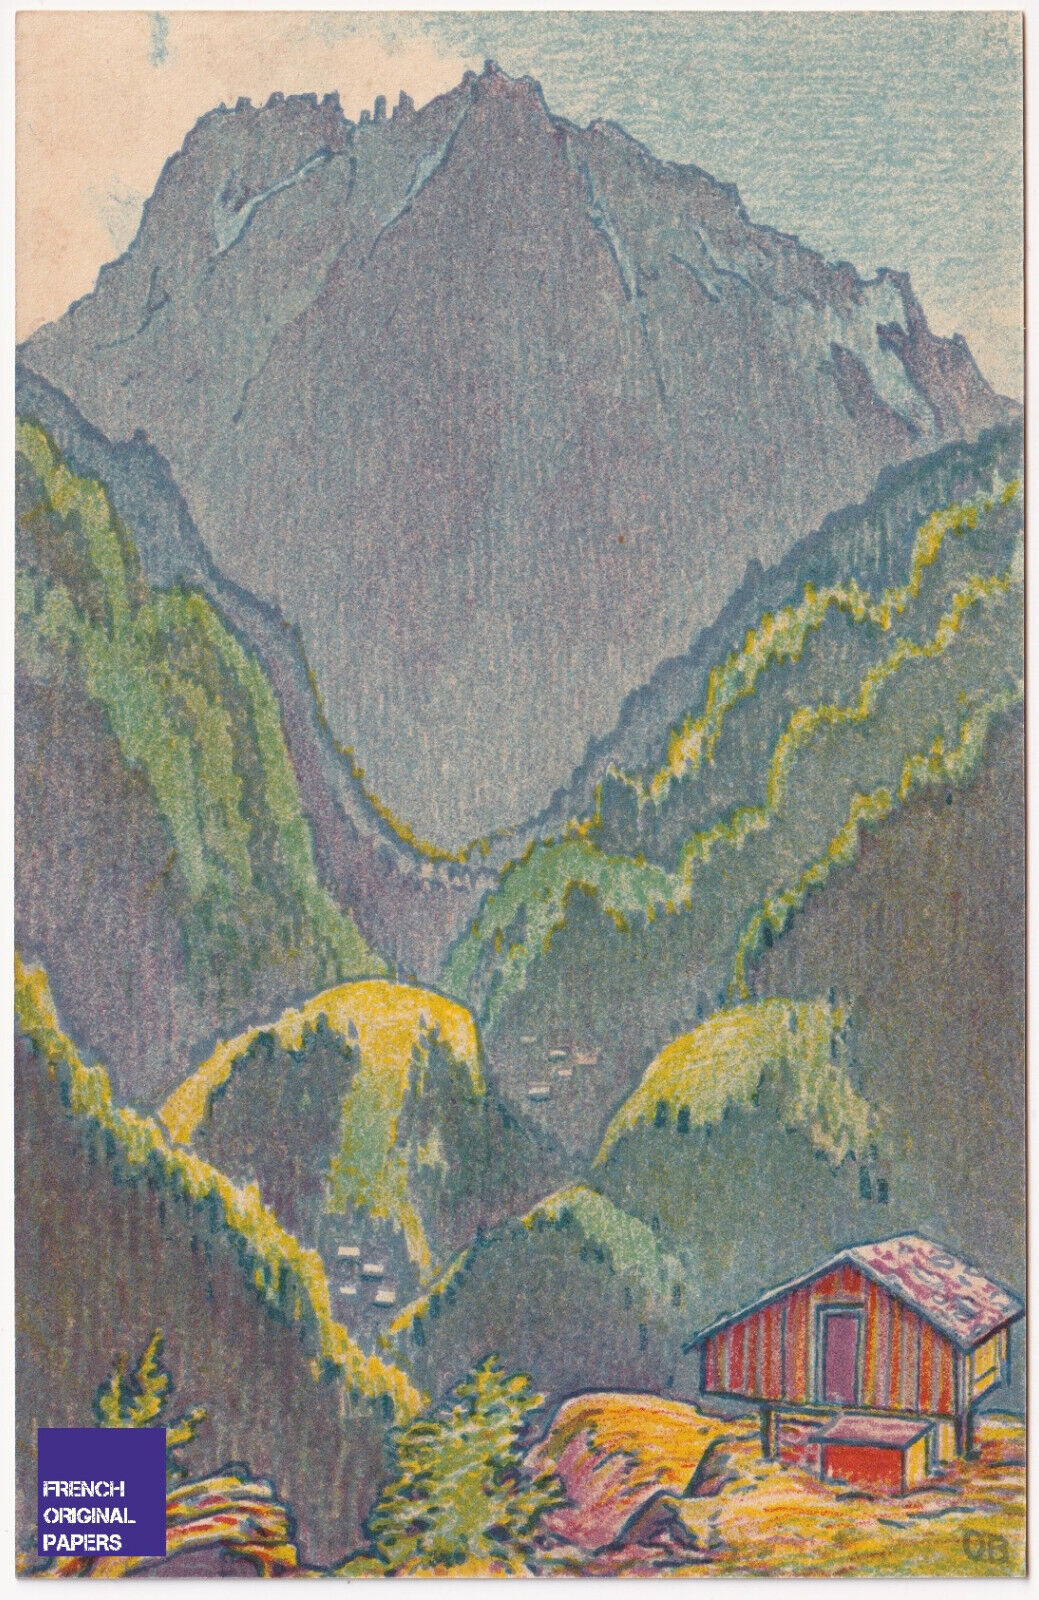 CPA Litho Finhaut Trento Martigny Chamonix 1915s Otto Baumberger Art Deco Alps